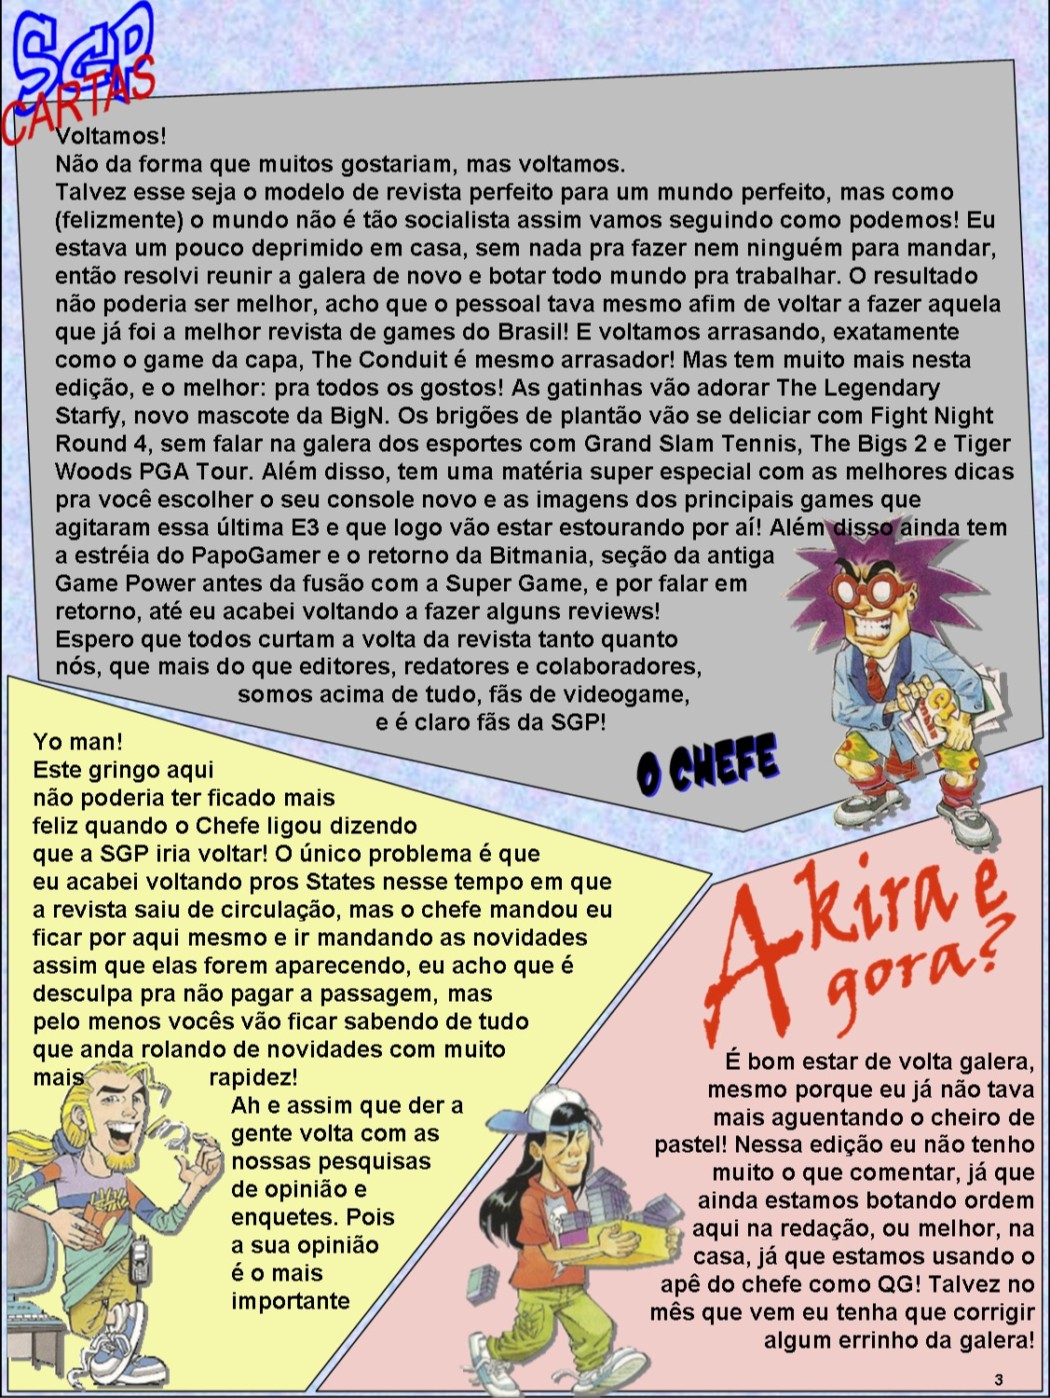 A revista Super Game Power, falou de games online em agosto de 2000  Fórum  Adrenaline - Um dos maiores e mais ativos fóruns do Brasil